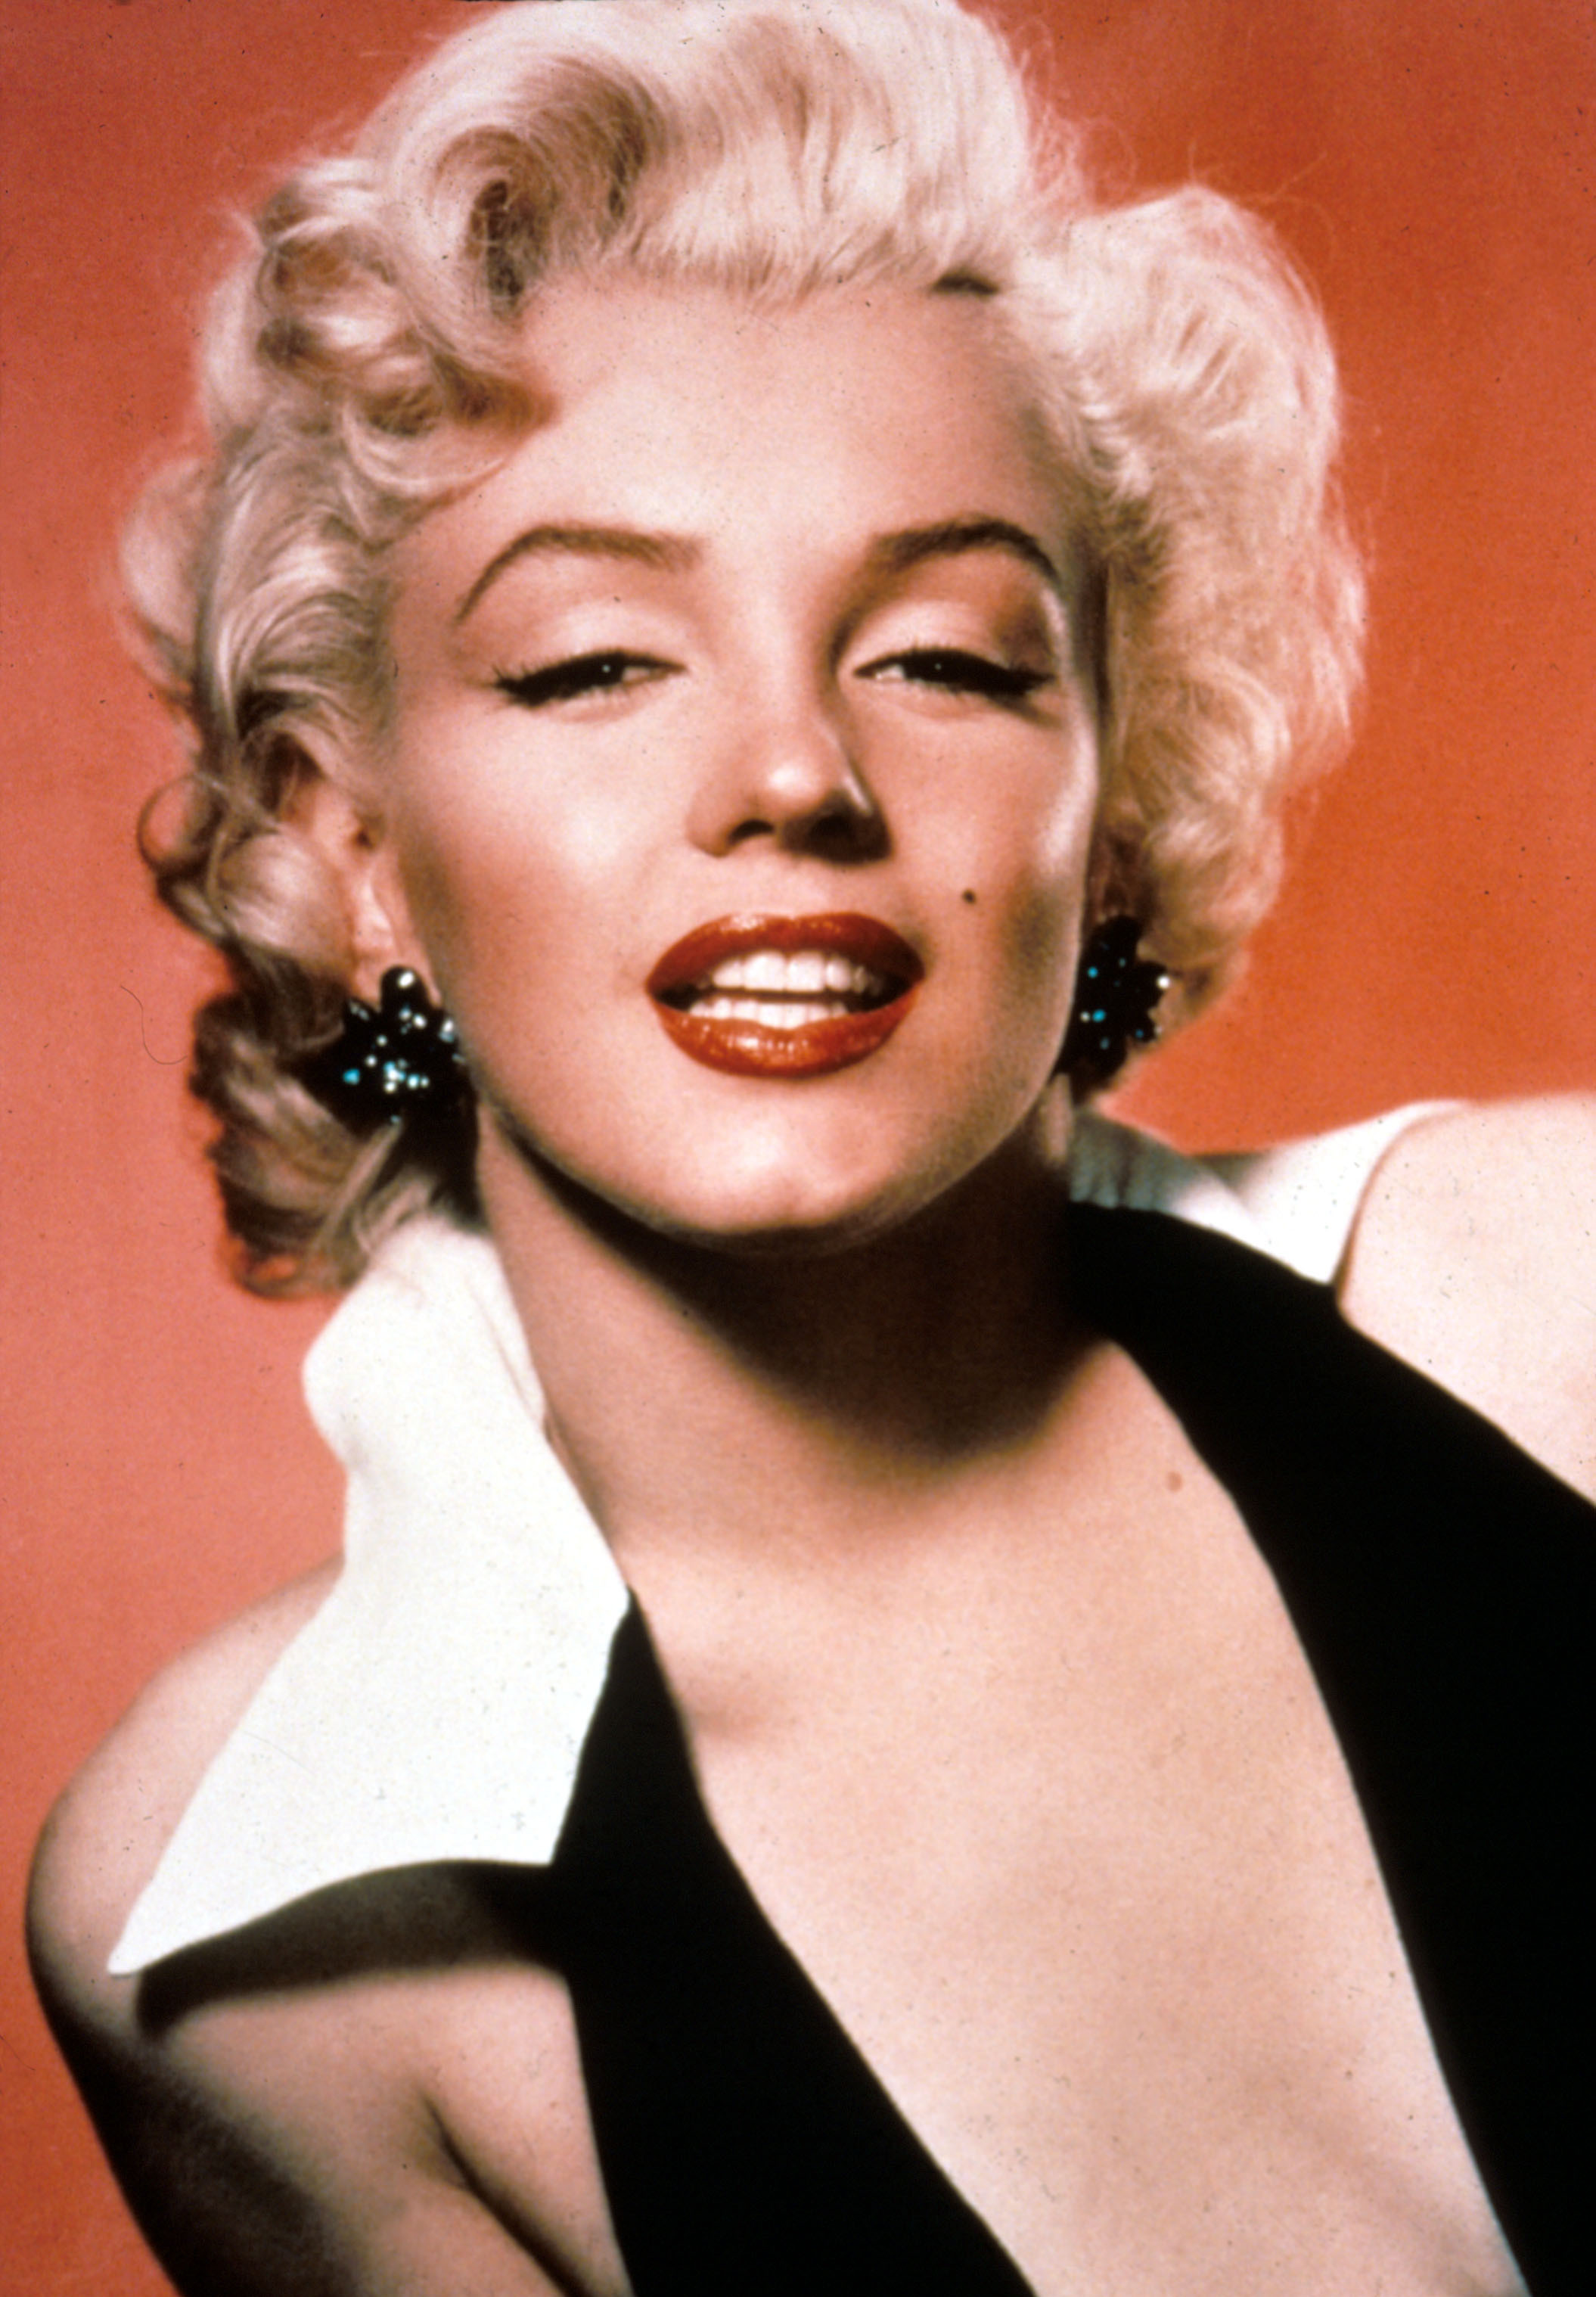 Persoon belast met sportgame Doorlaatbaarheid sofa Marilyn Monroe - All the actresses who've played her | Gallery |  Wonderwall.com